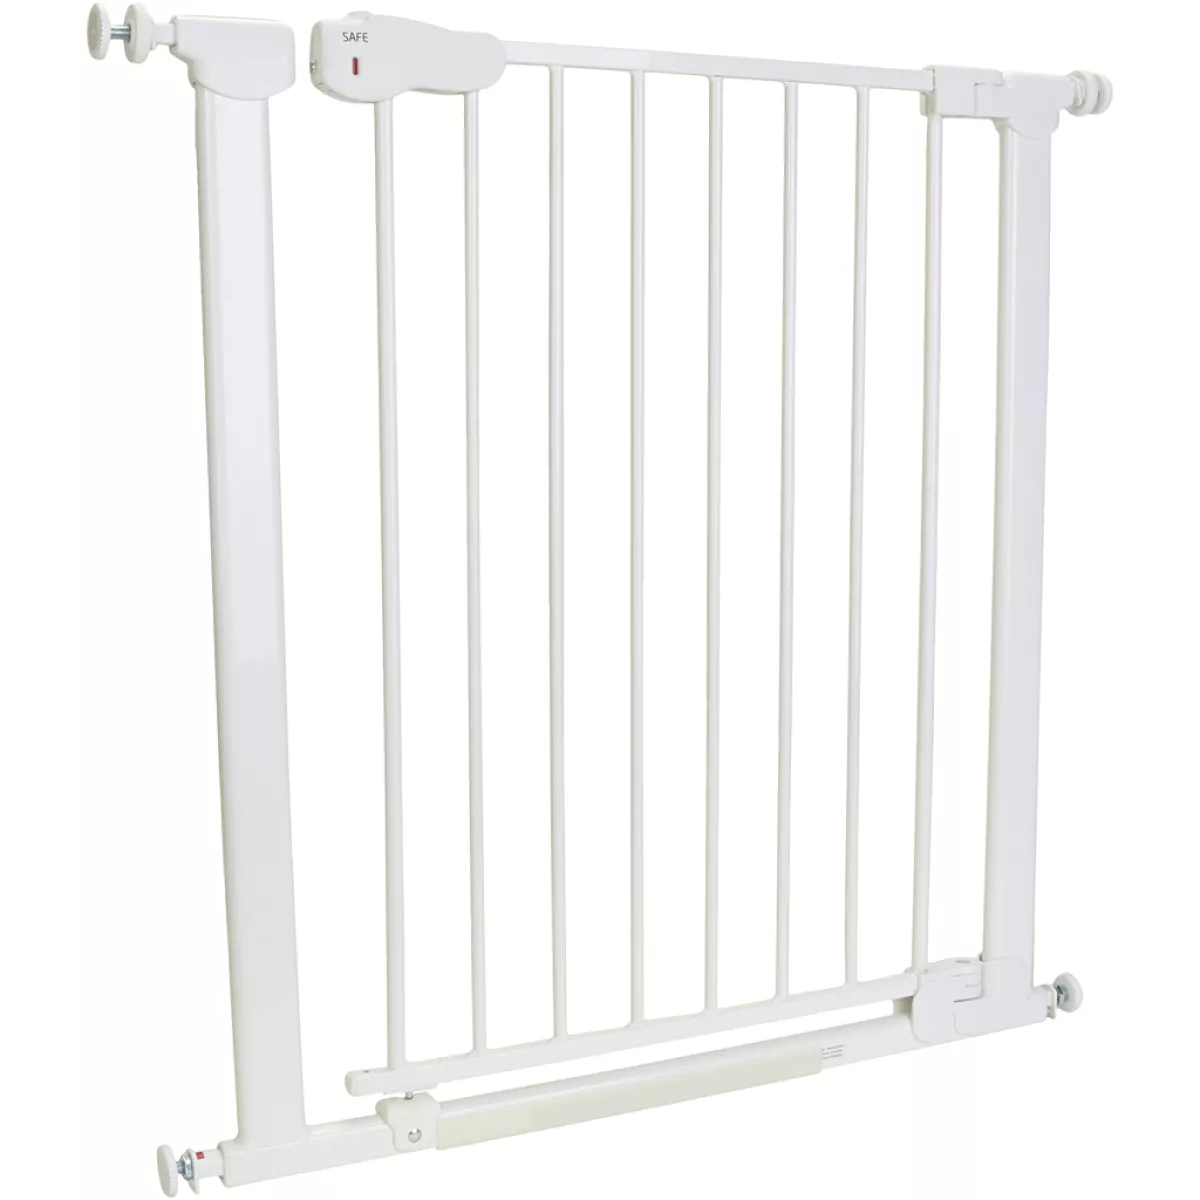 #1 - Safe Gate sikkerhedsgitter, H: 77 cm, hvid, 1 stk.